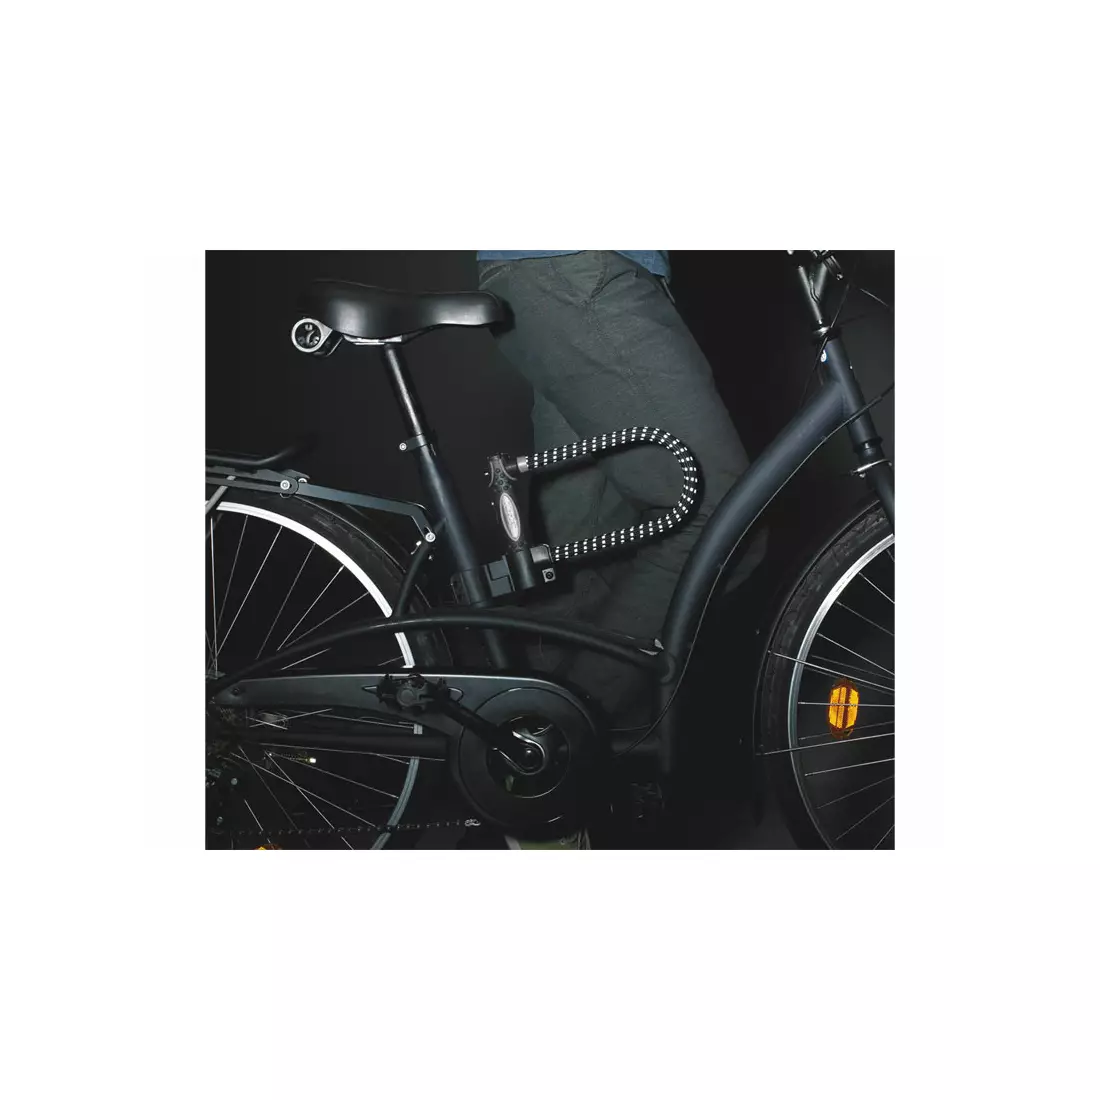 Închizător pentru bicicletă MASTERLOCK 8195 U-LOCK 13mm 110mm 210mm cauciuc acoperit cu reflex, negru MRL-8195EURDPROREF SS16